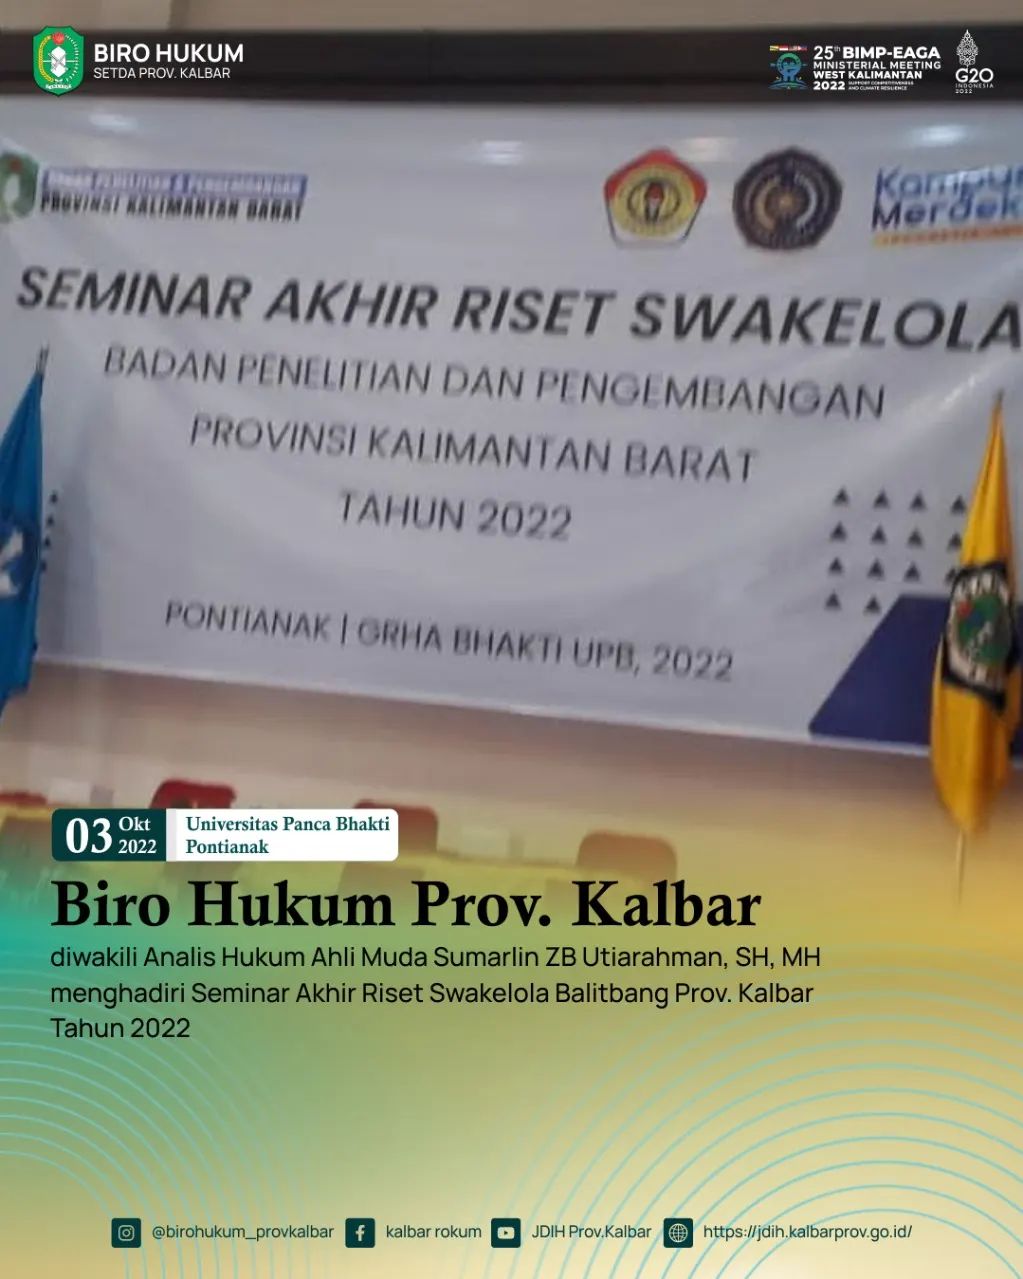 Seminar Akhir Riset Swakelola Balitbang Prov. Kalbar Tahun 2022